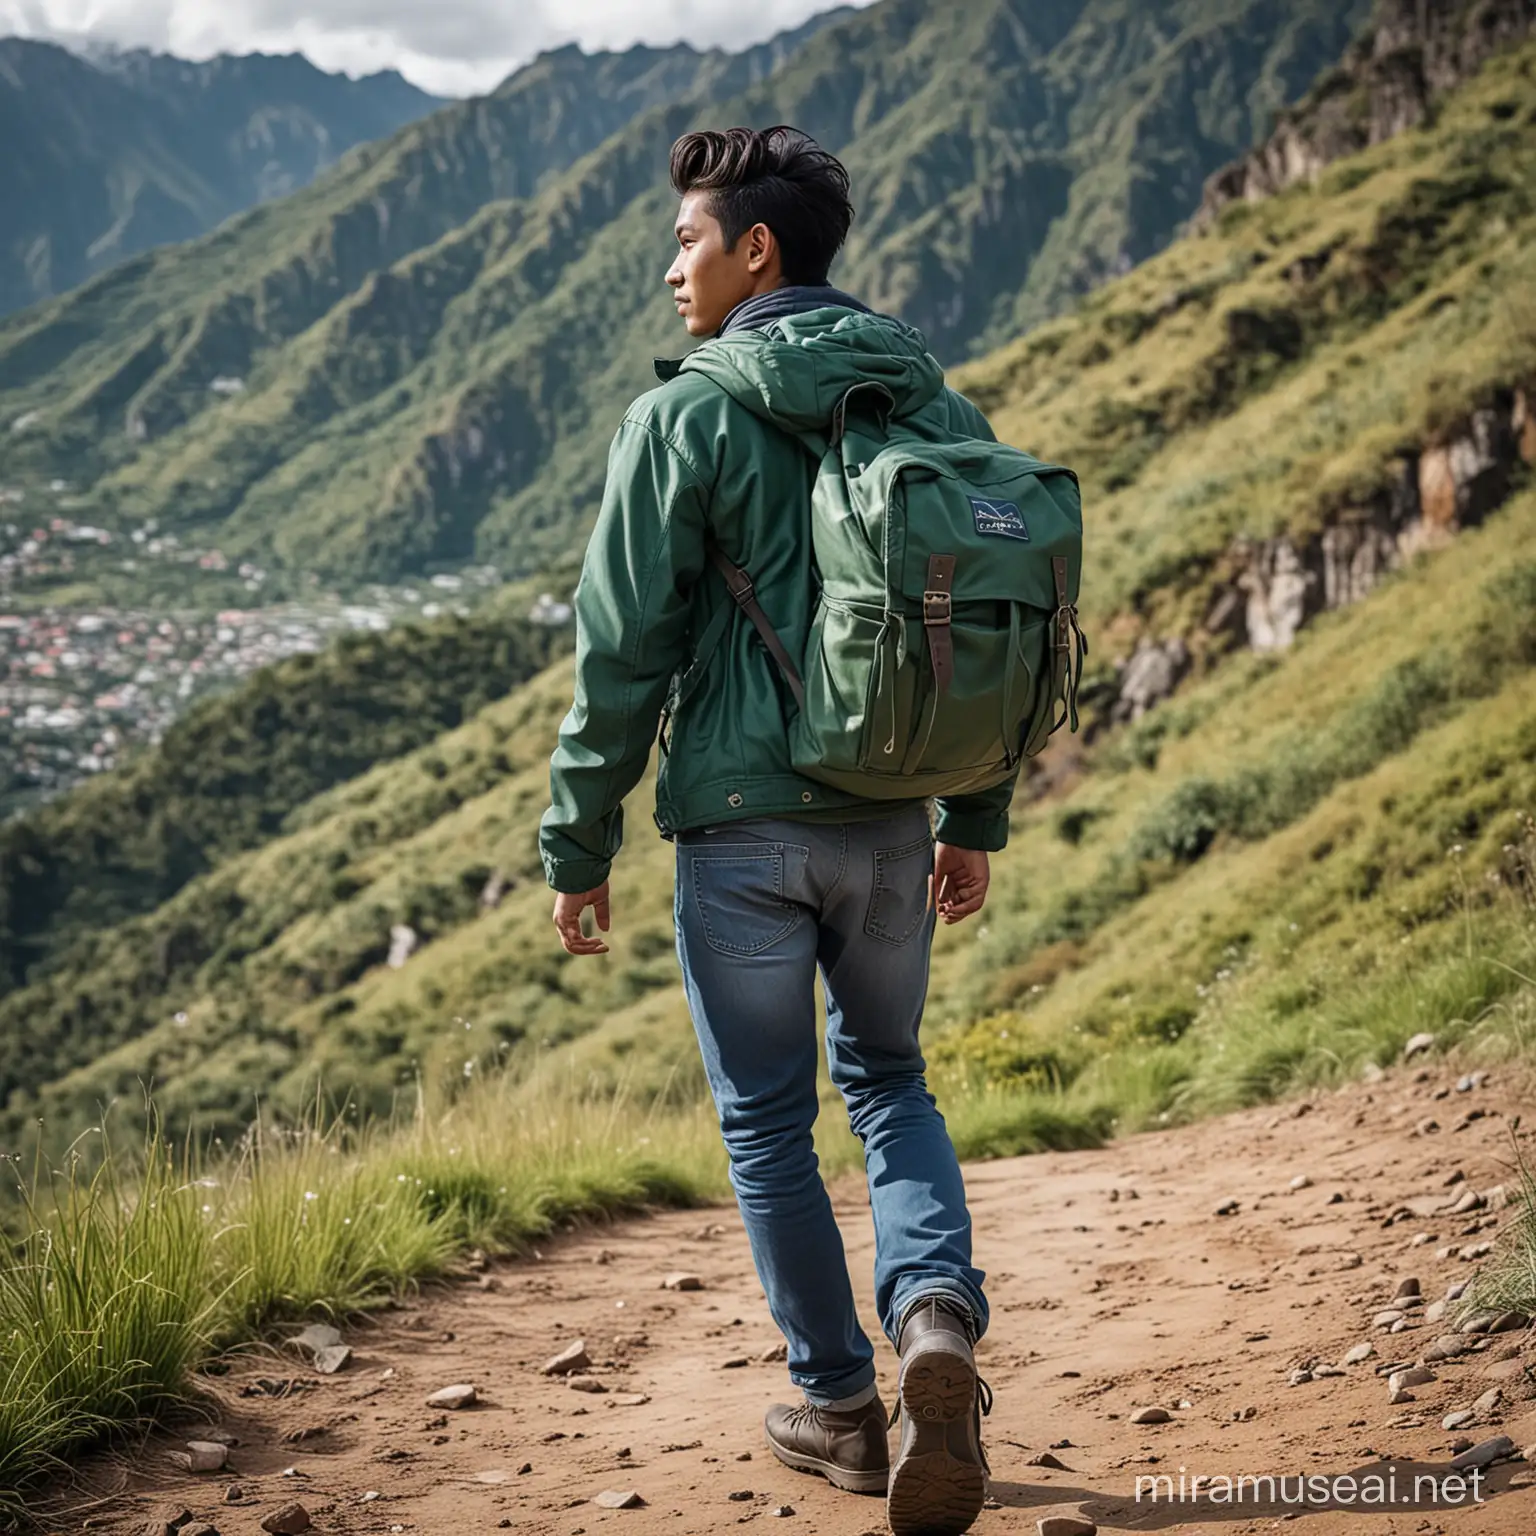 Foto pria indonesia umur 25 tahun,rambut medium,baju kaos dan jaket dingin hijau,celana hean biru,sepatu kulit,membawa wa tas ransel yang besar,lokasi sebuah gunung yang indah 